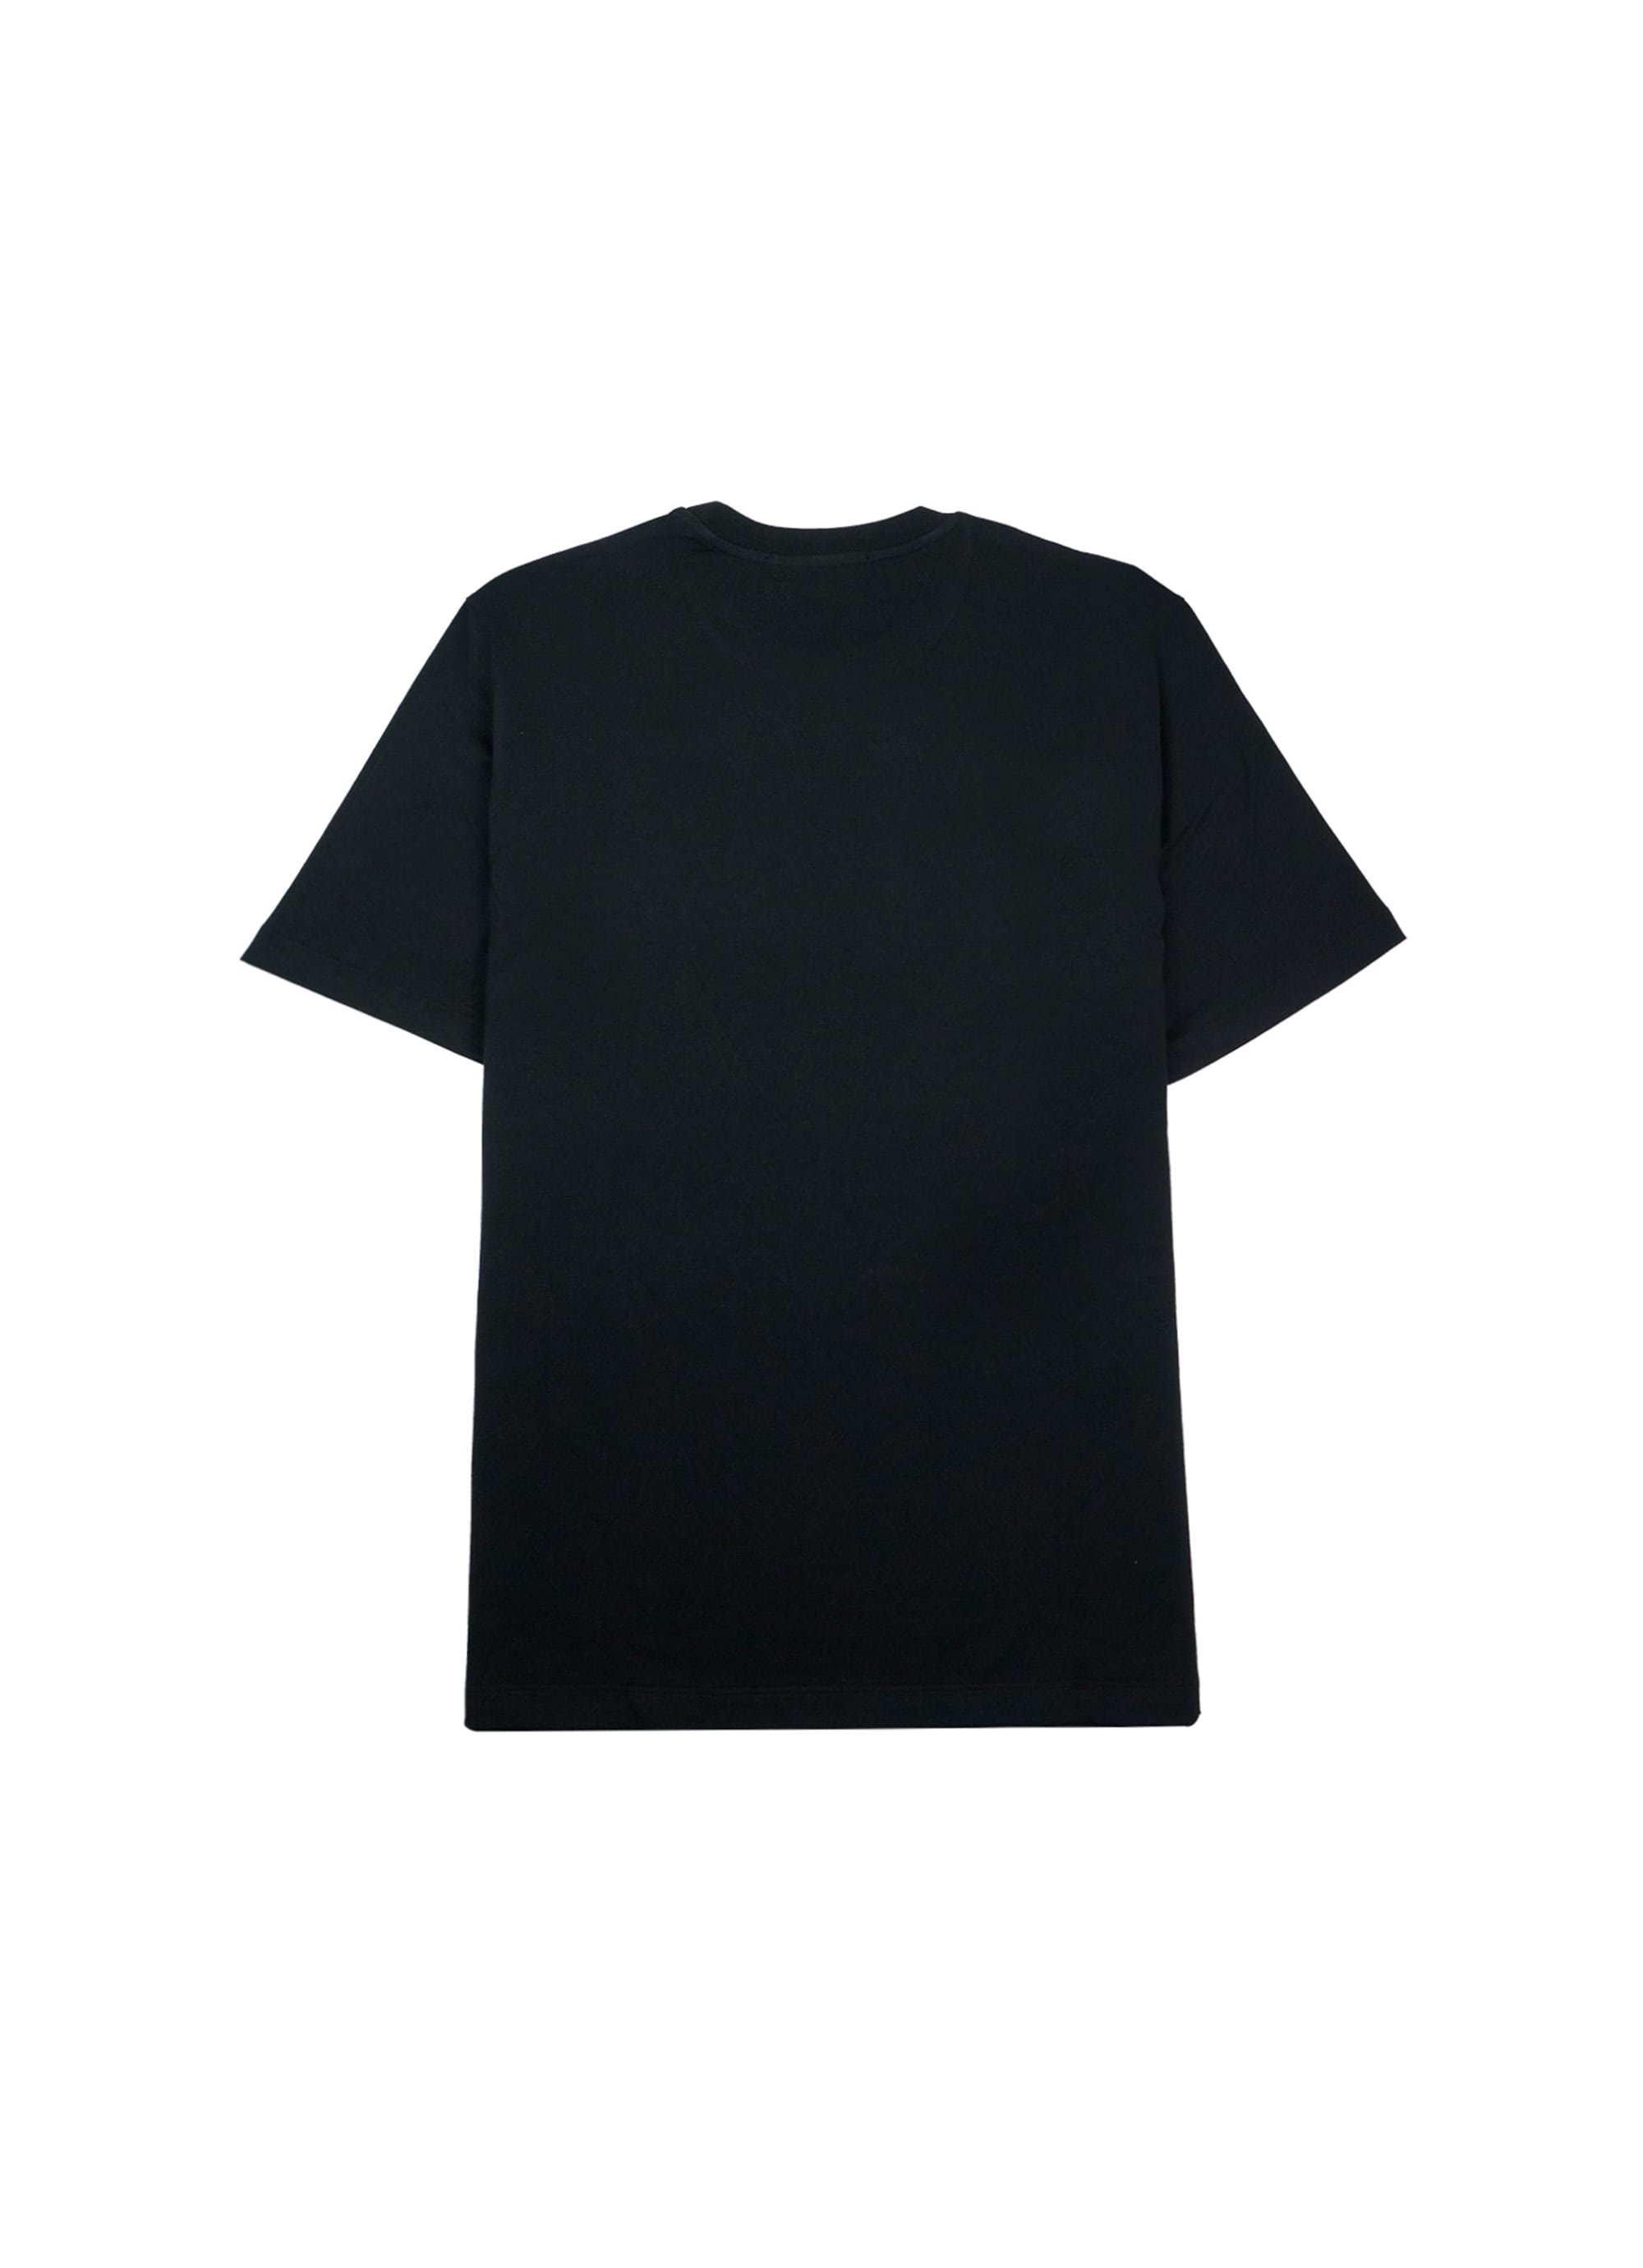 【NEW】ブラッシュネオンロゴTシャツ 詳細画像 ブラック×グリーン 2